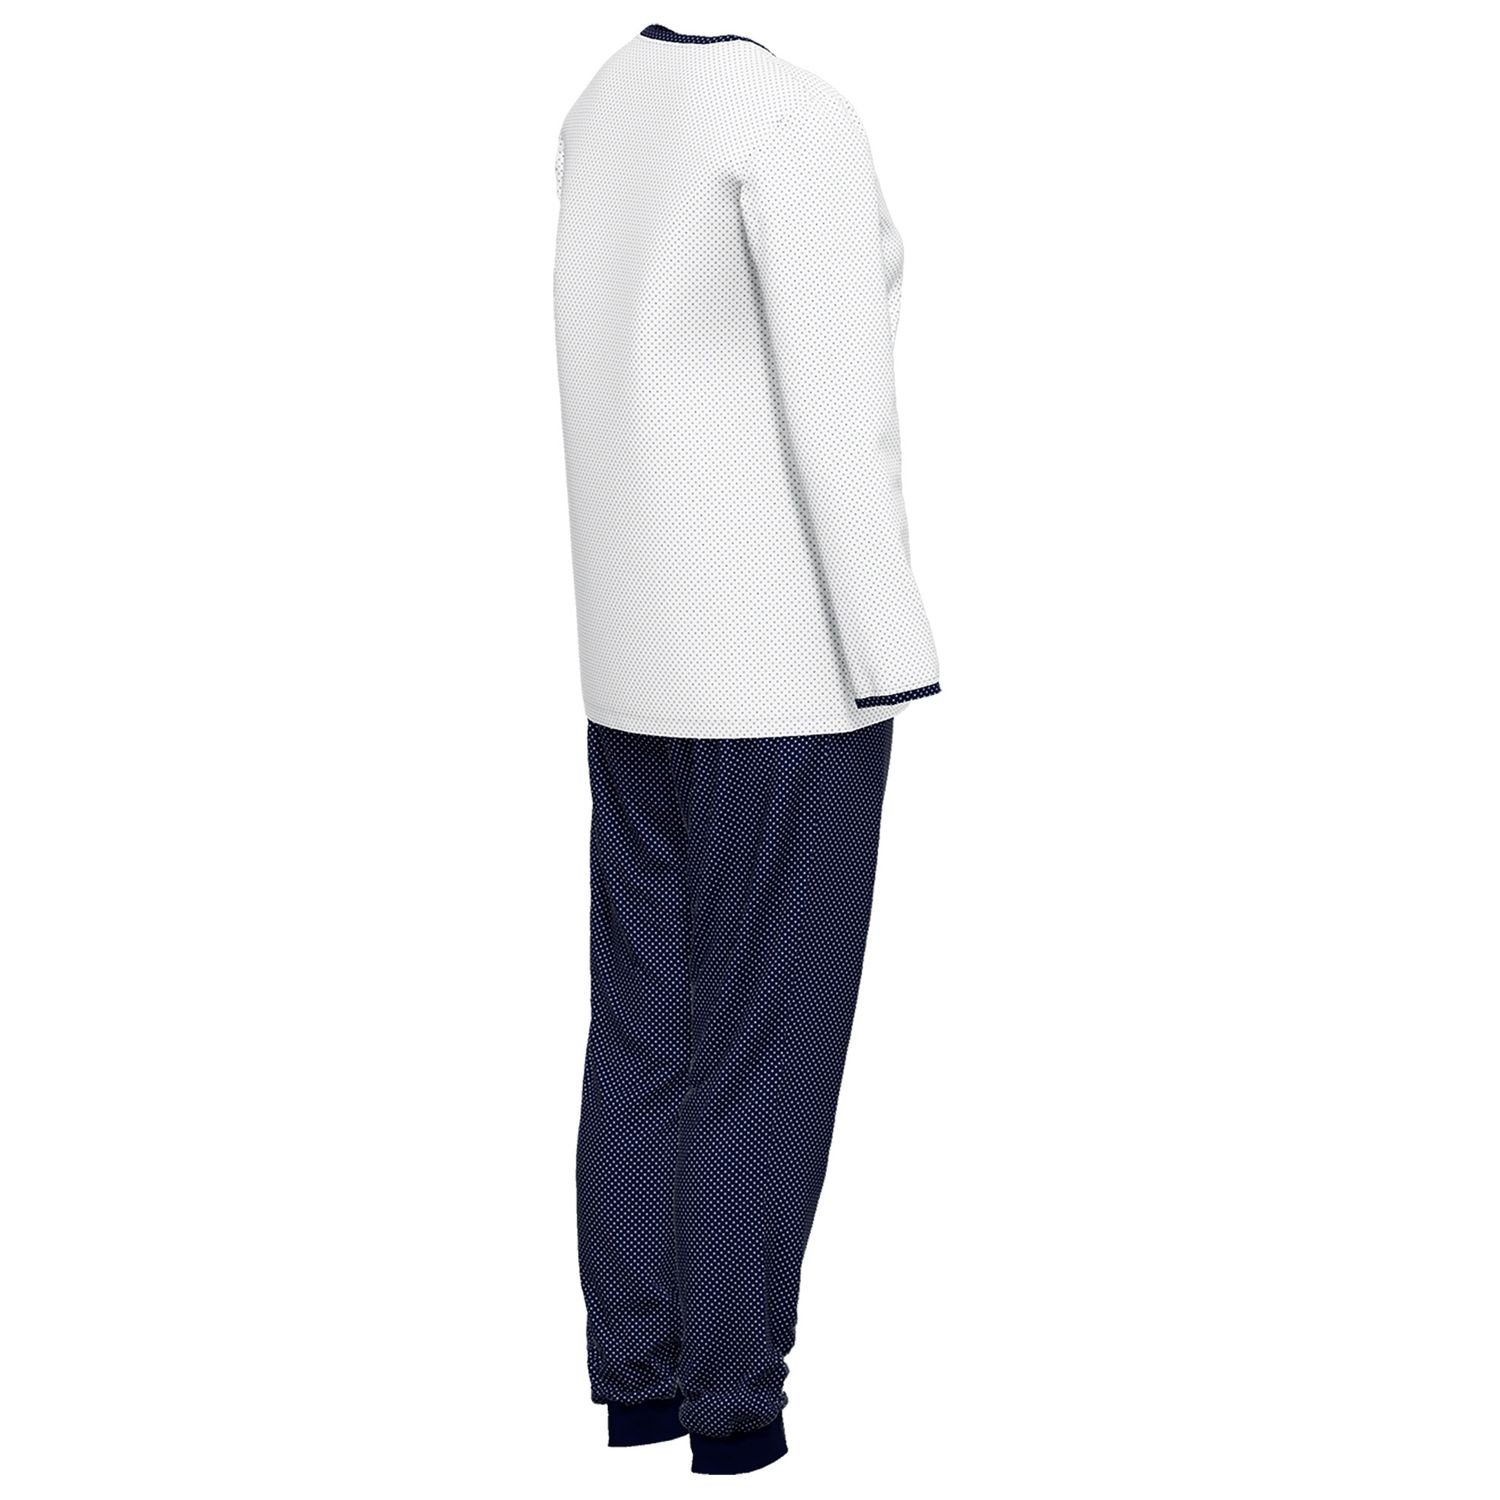 GÖTZBURG Schlafanzug mit Henley-Auschnitt, Knöpfe, bequem, Baumolle weich, gepunktet navy langarm, / reine weiß